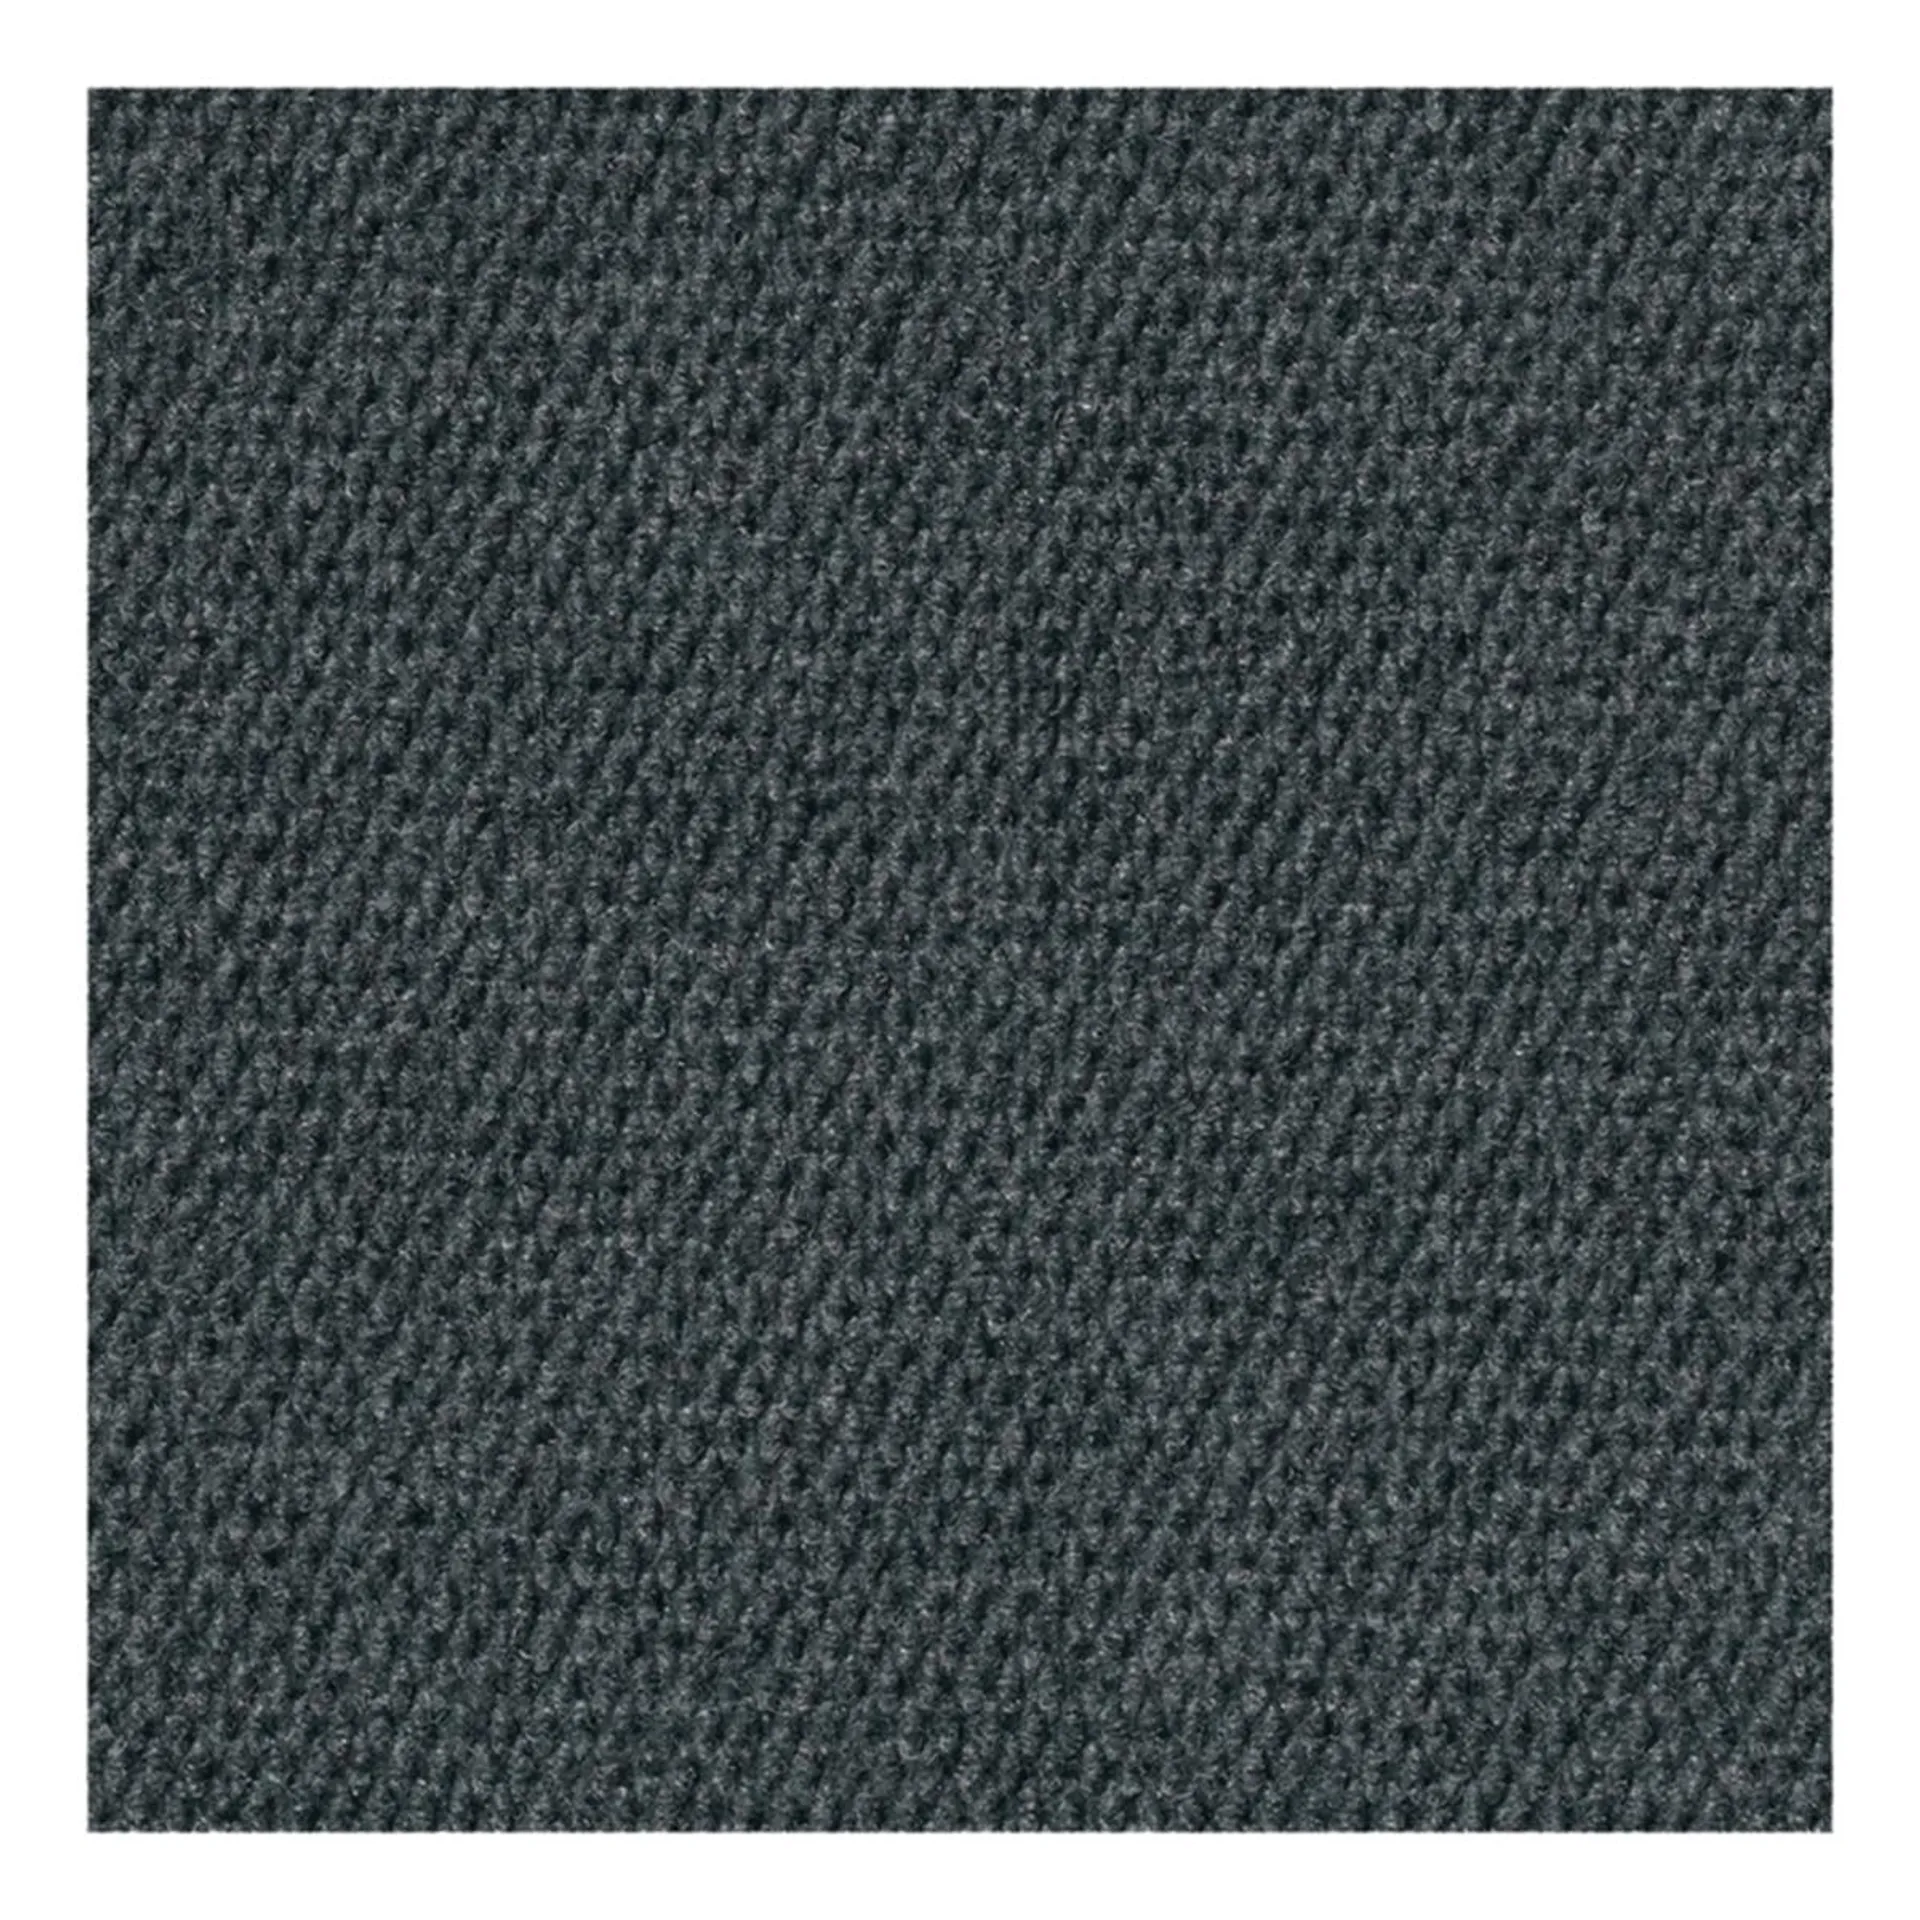 MM7010 Tile Flooring, 18 in L, 18 in W, Titan Pattern, Rubber, Matte Black